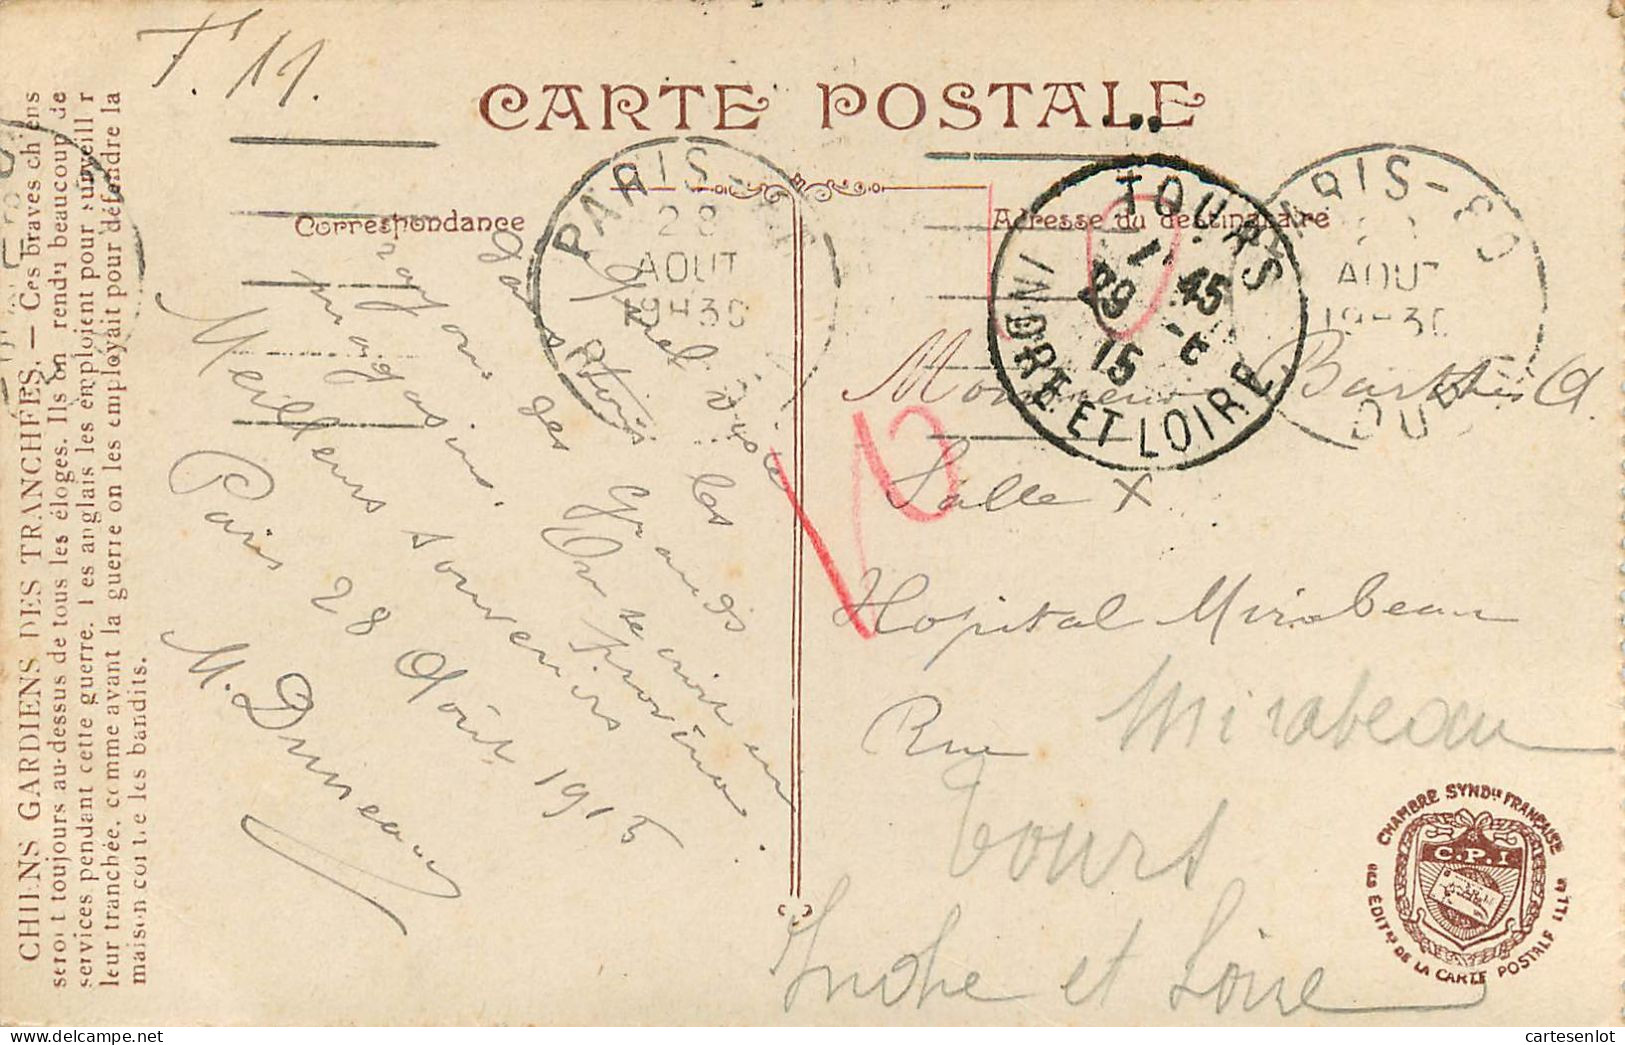 lot de 65 cartes postale France correspondance même famille